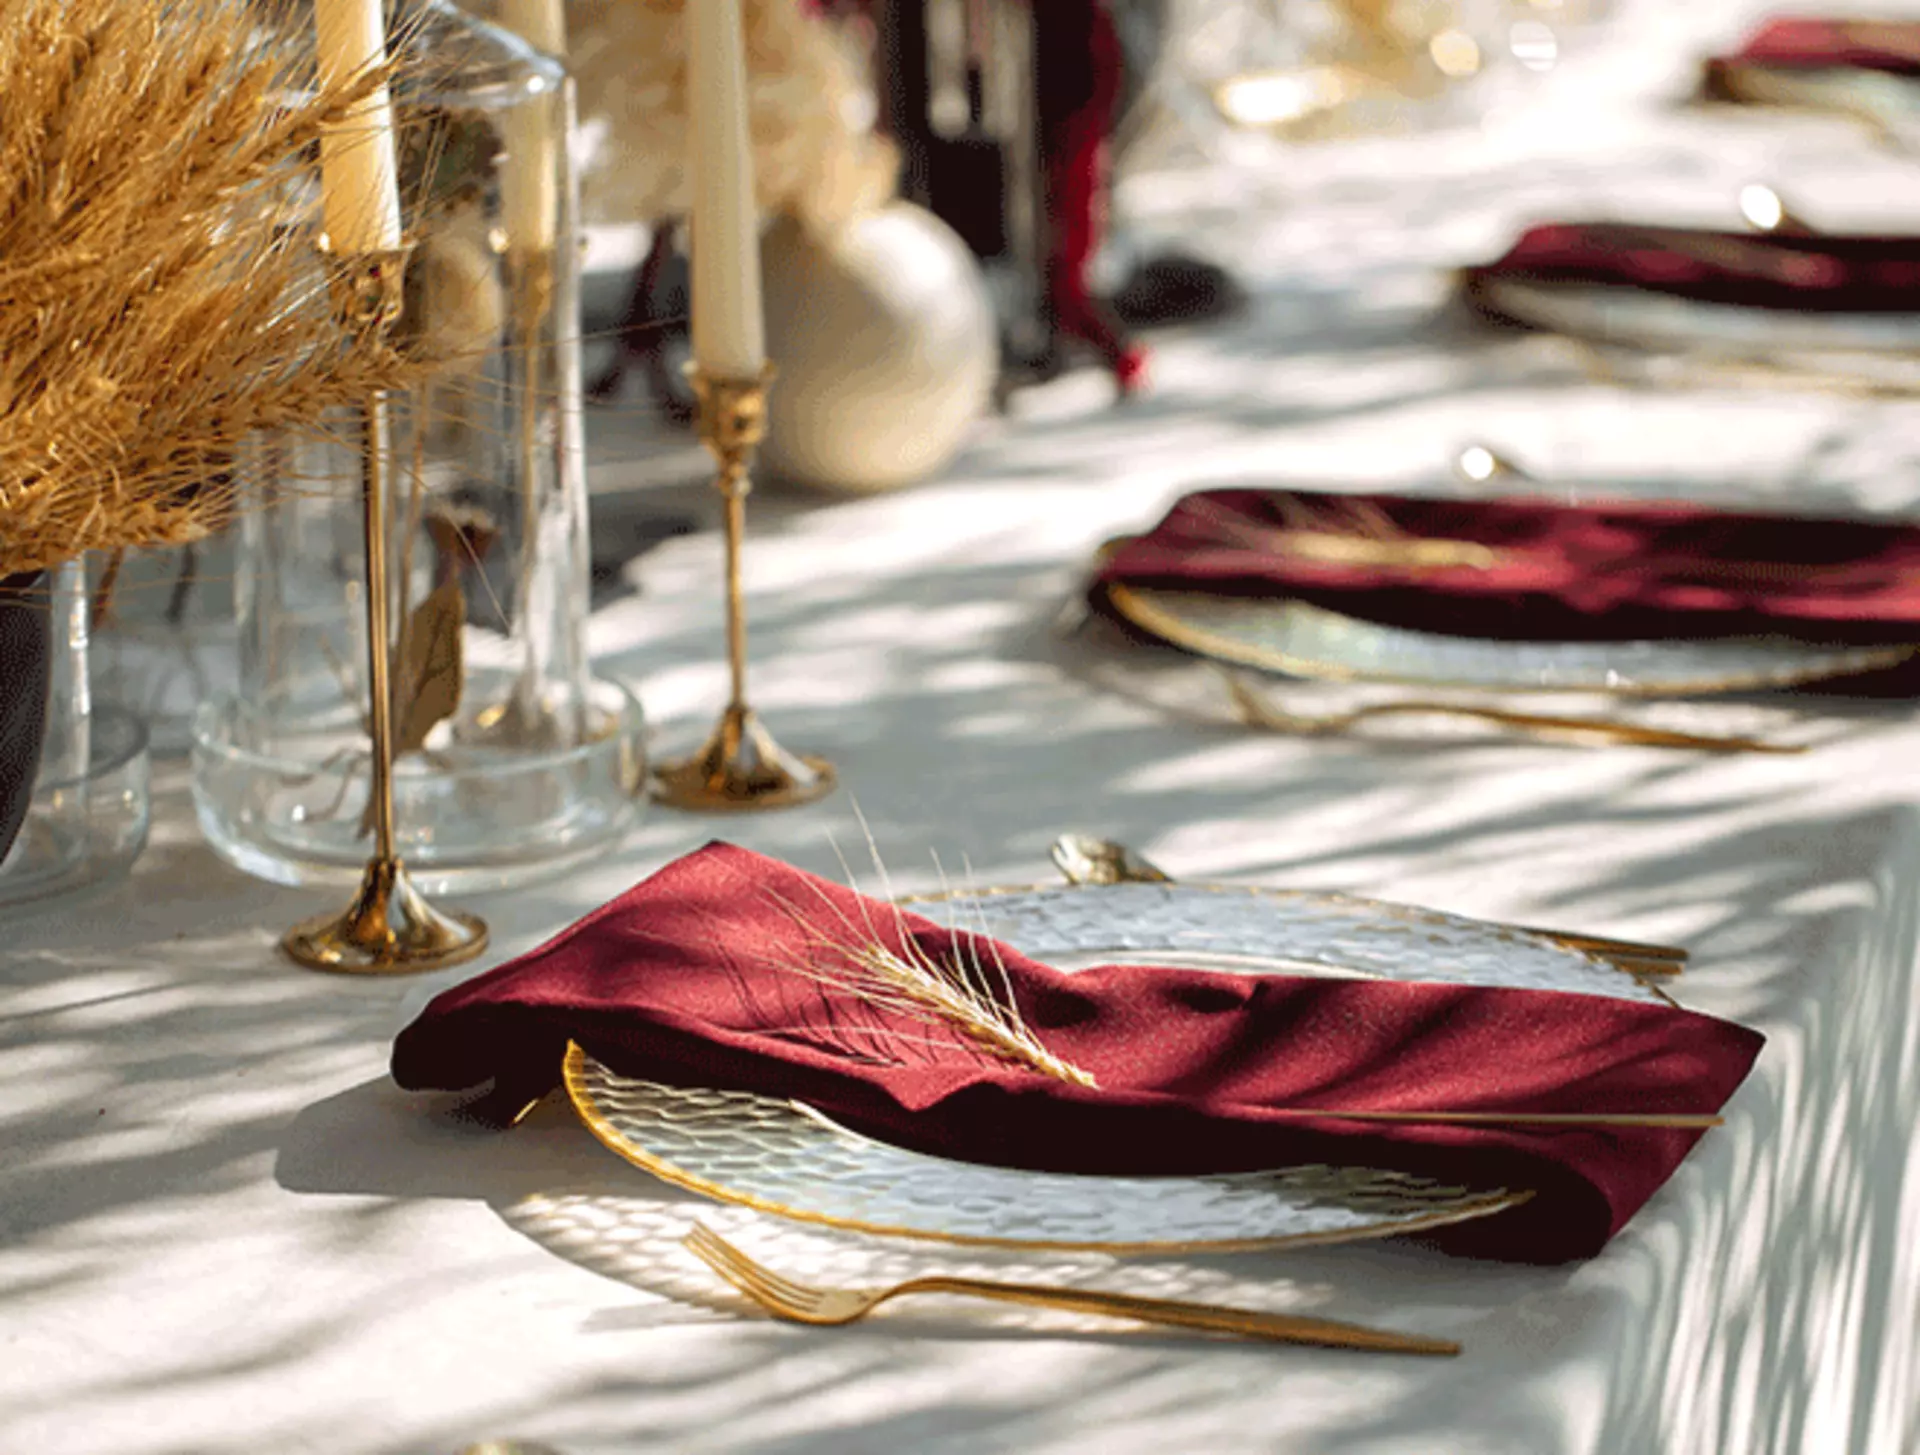 Esstisch mit goldenem Besteck und Kerzenleuchtern, weißen Tellern mit goldenen Akzenten und roten Servietten.